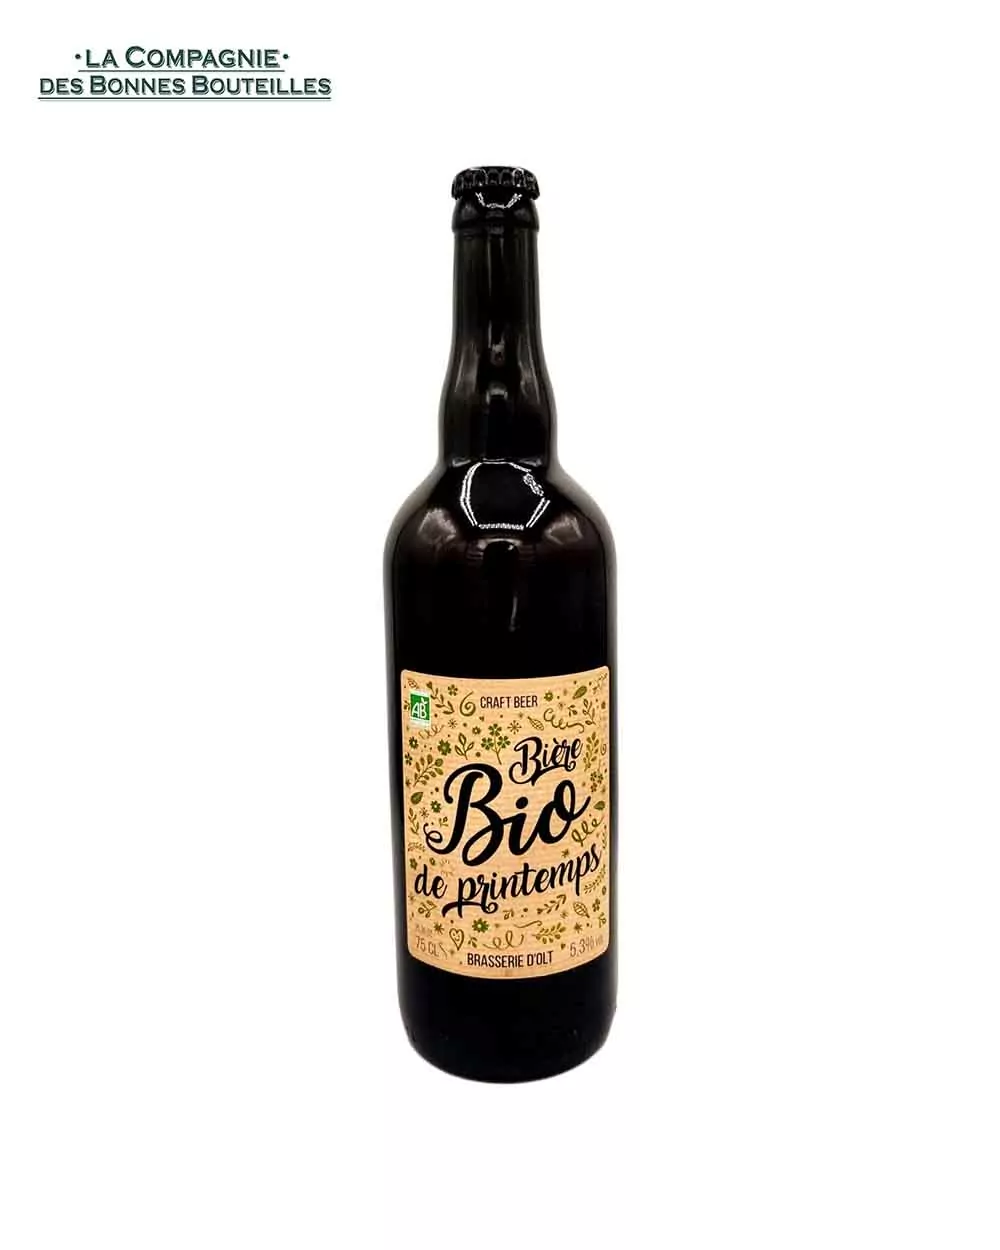 Bière Brasserie d'olt - Bio de Printemps - 75 cl